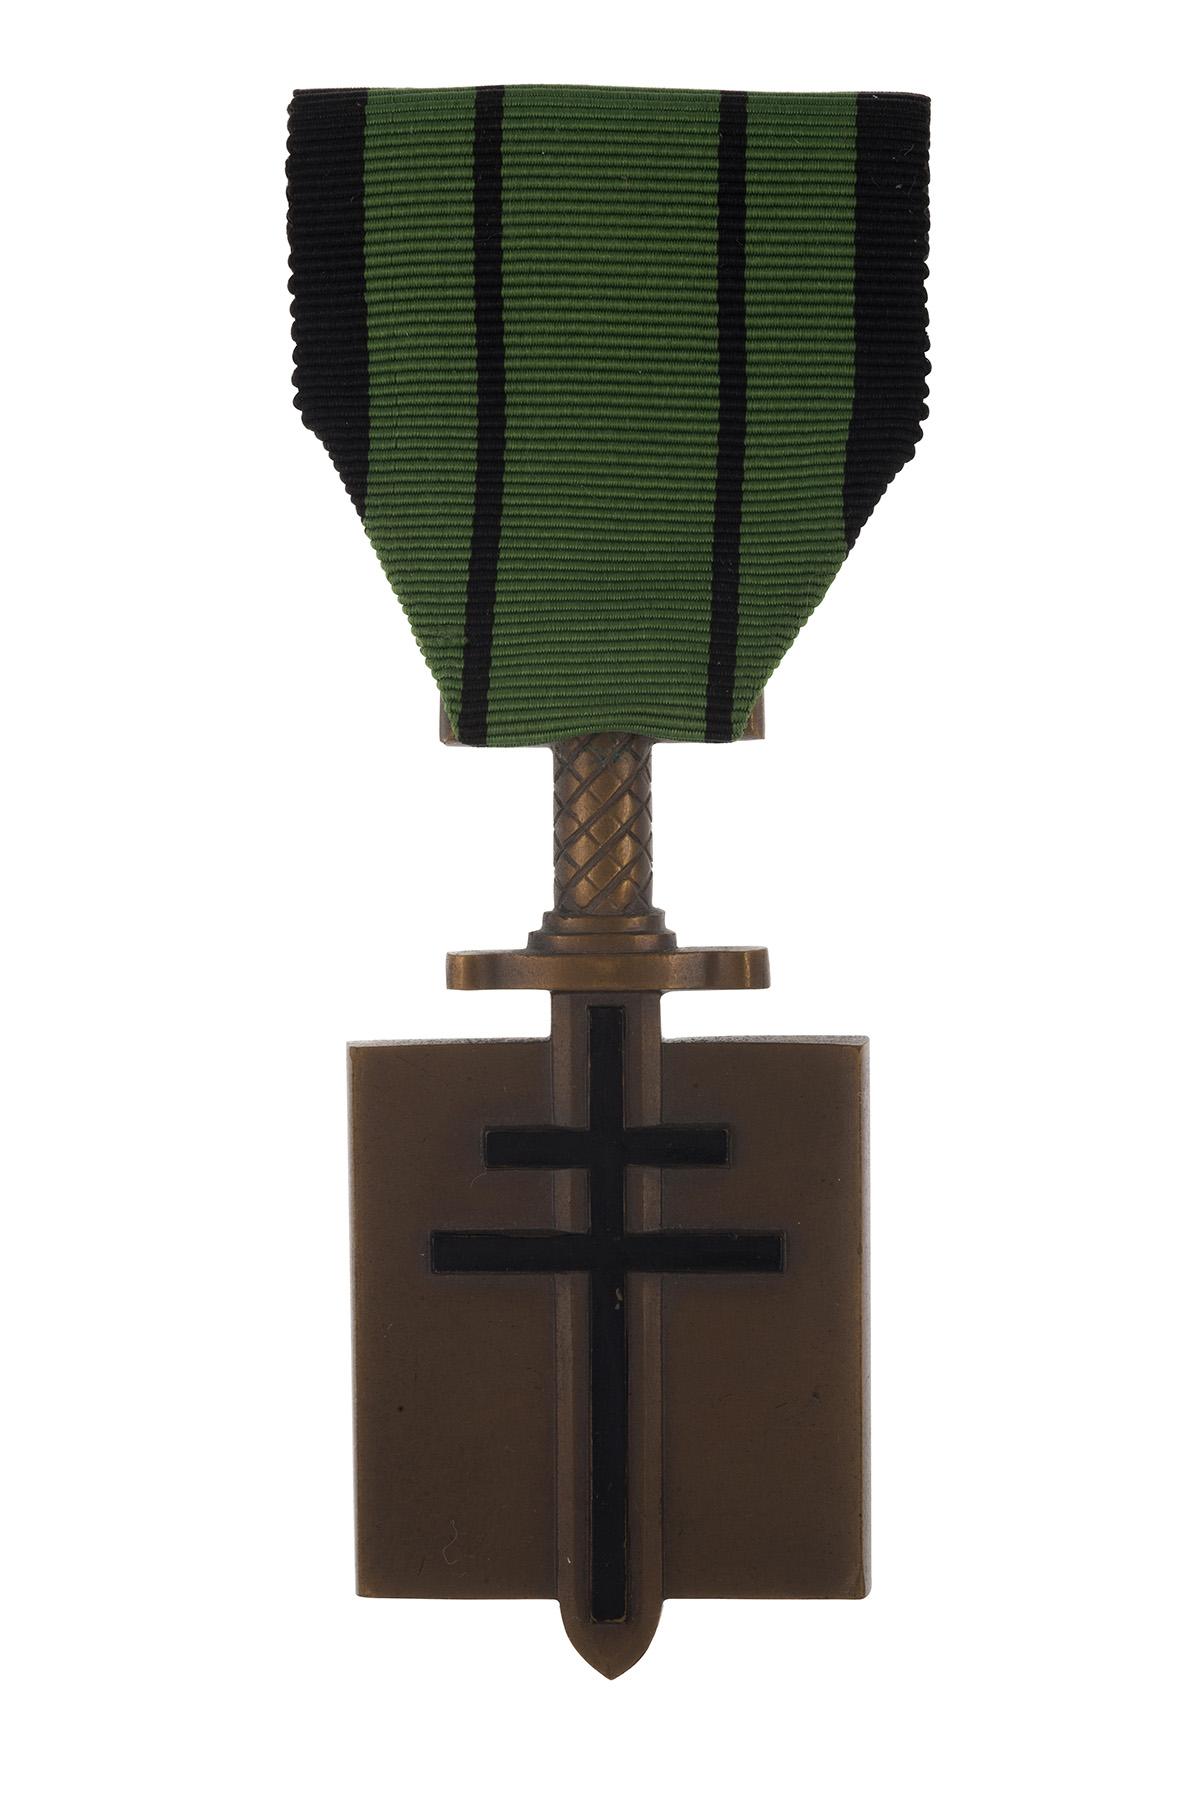 Croix de la Libération de Marie Hackin. ©Musée de l’Ordre de la Libération